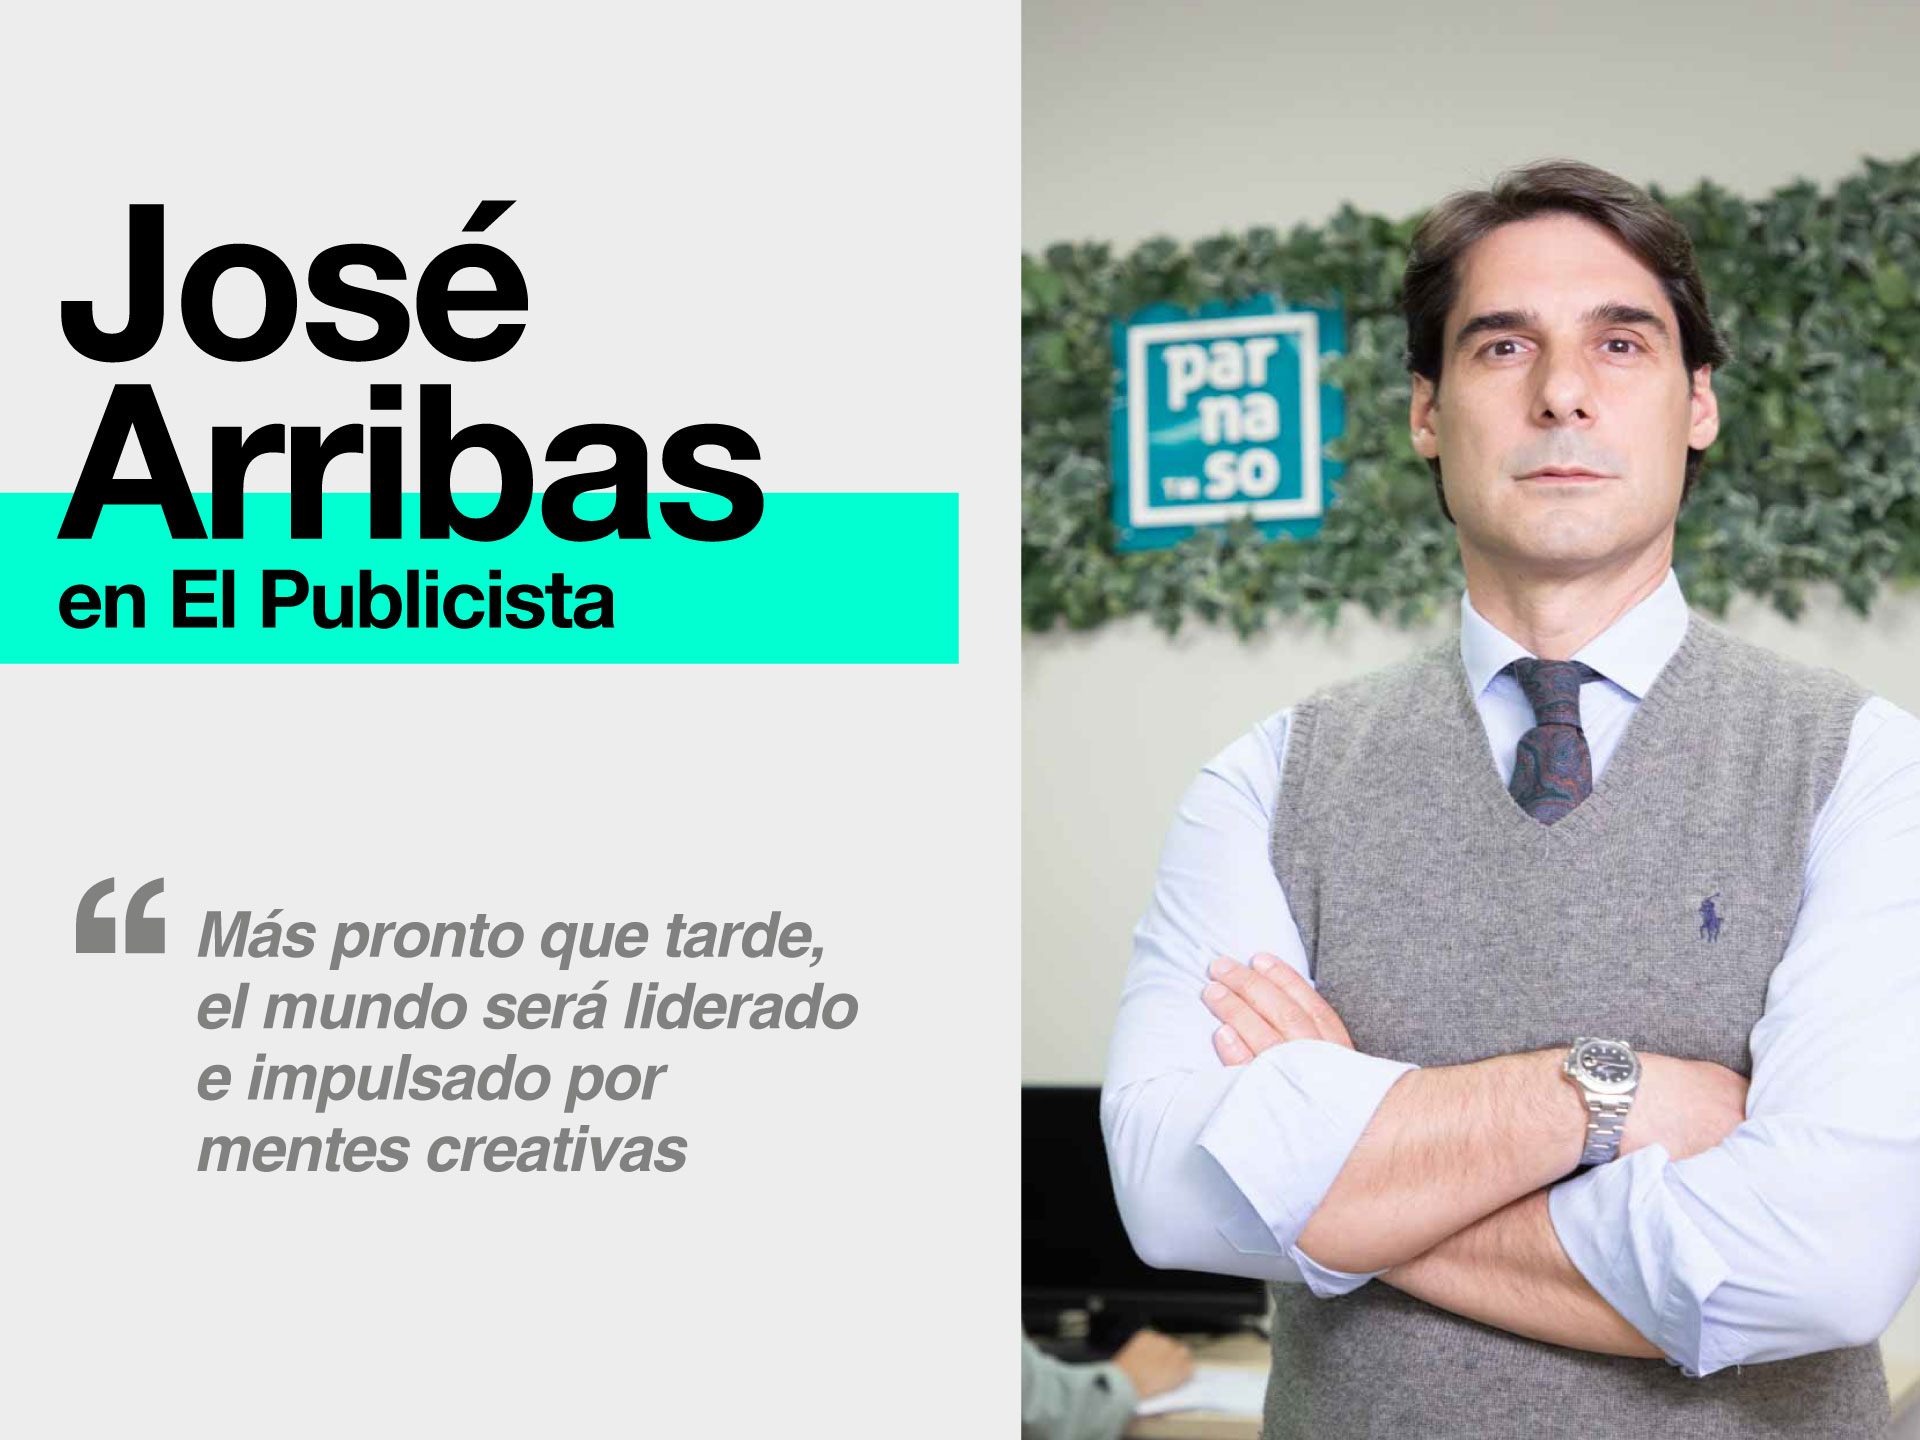 Nuevo artículo de José Arribas León en el medio El Publicista - Parnaso